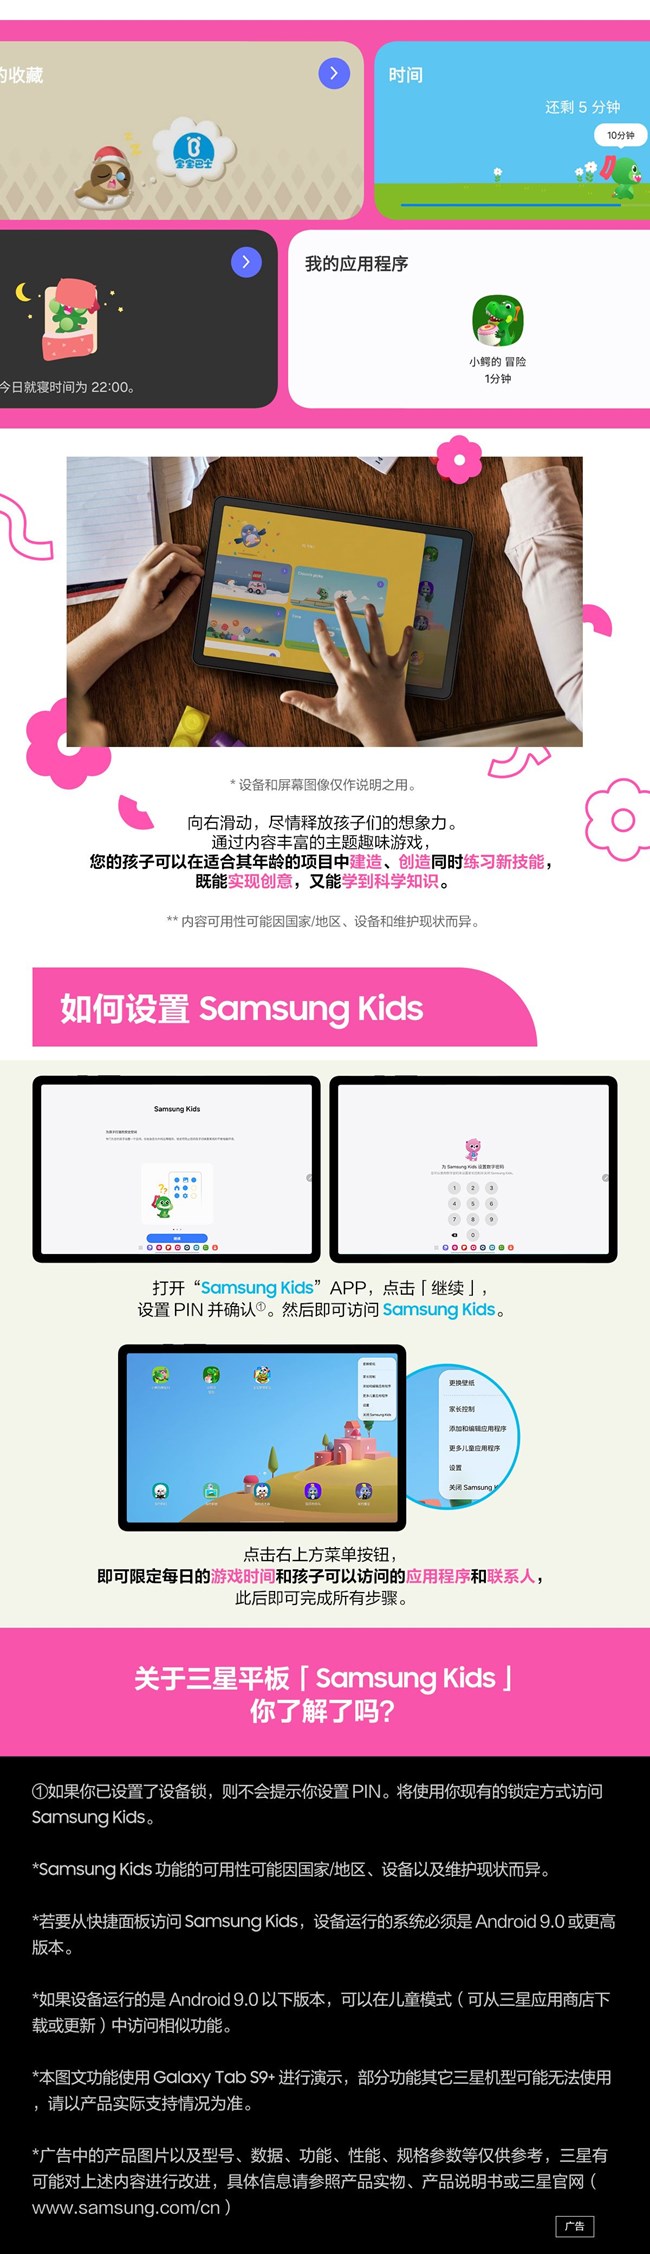 技巧集市Vol.32 | 专为儿童设计的应用程序「Samsung Kids」